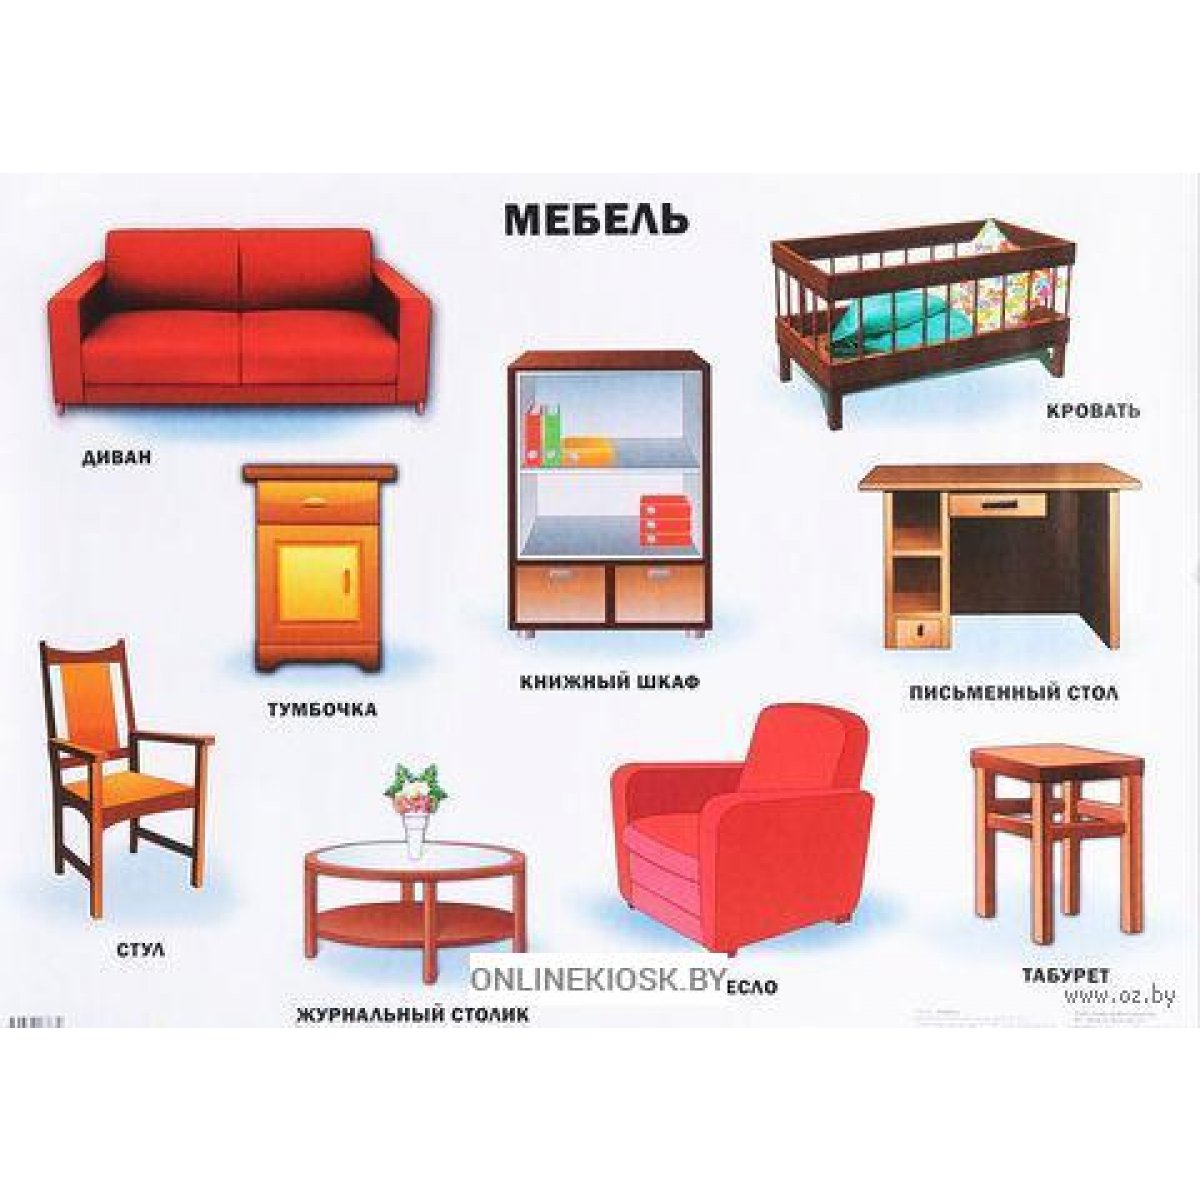 назовите основные виды облицовывания поверхностей мебели